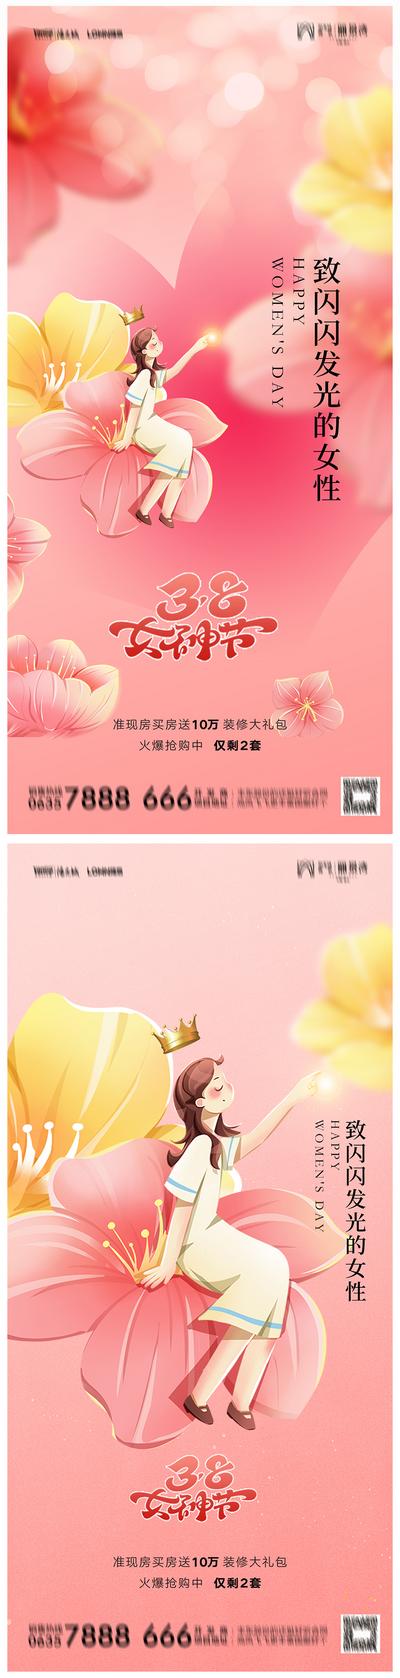 南门网 广告 海报 节气 妇女节 38 女神节 系列 插画